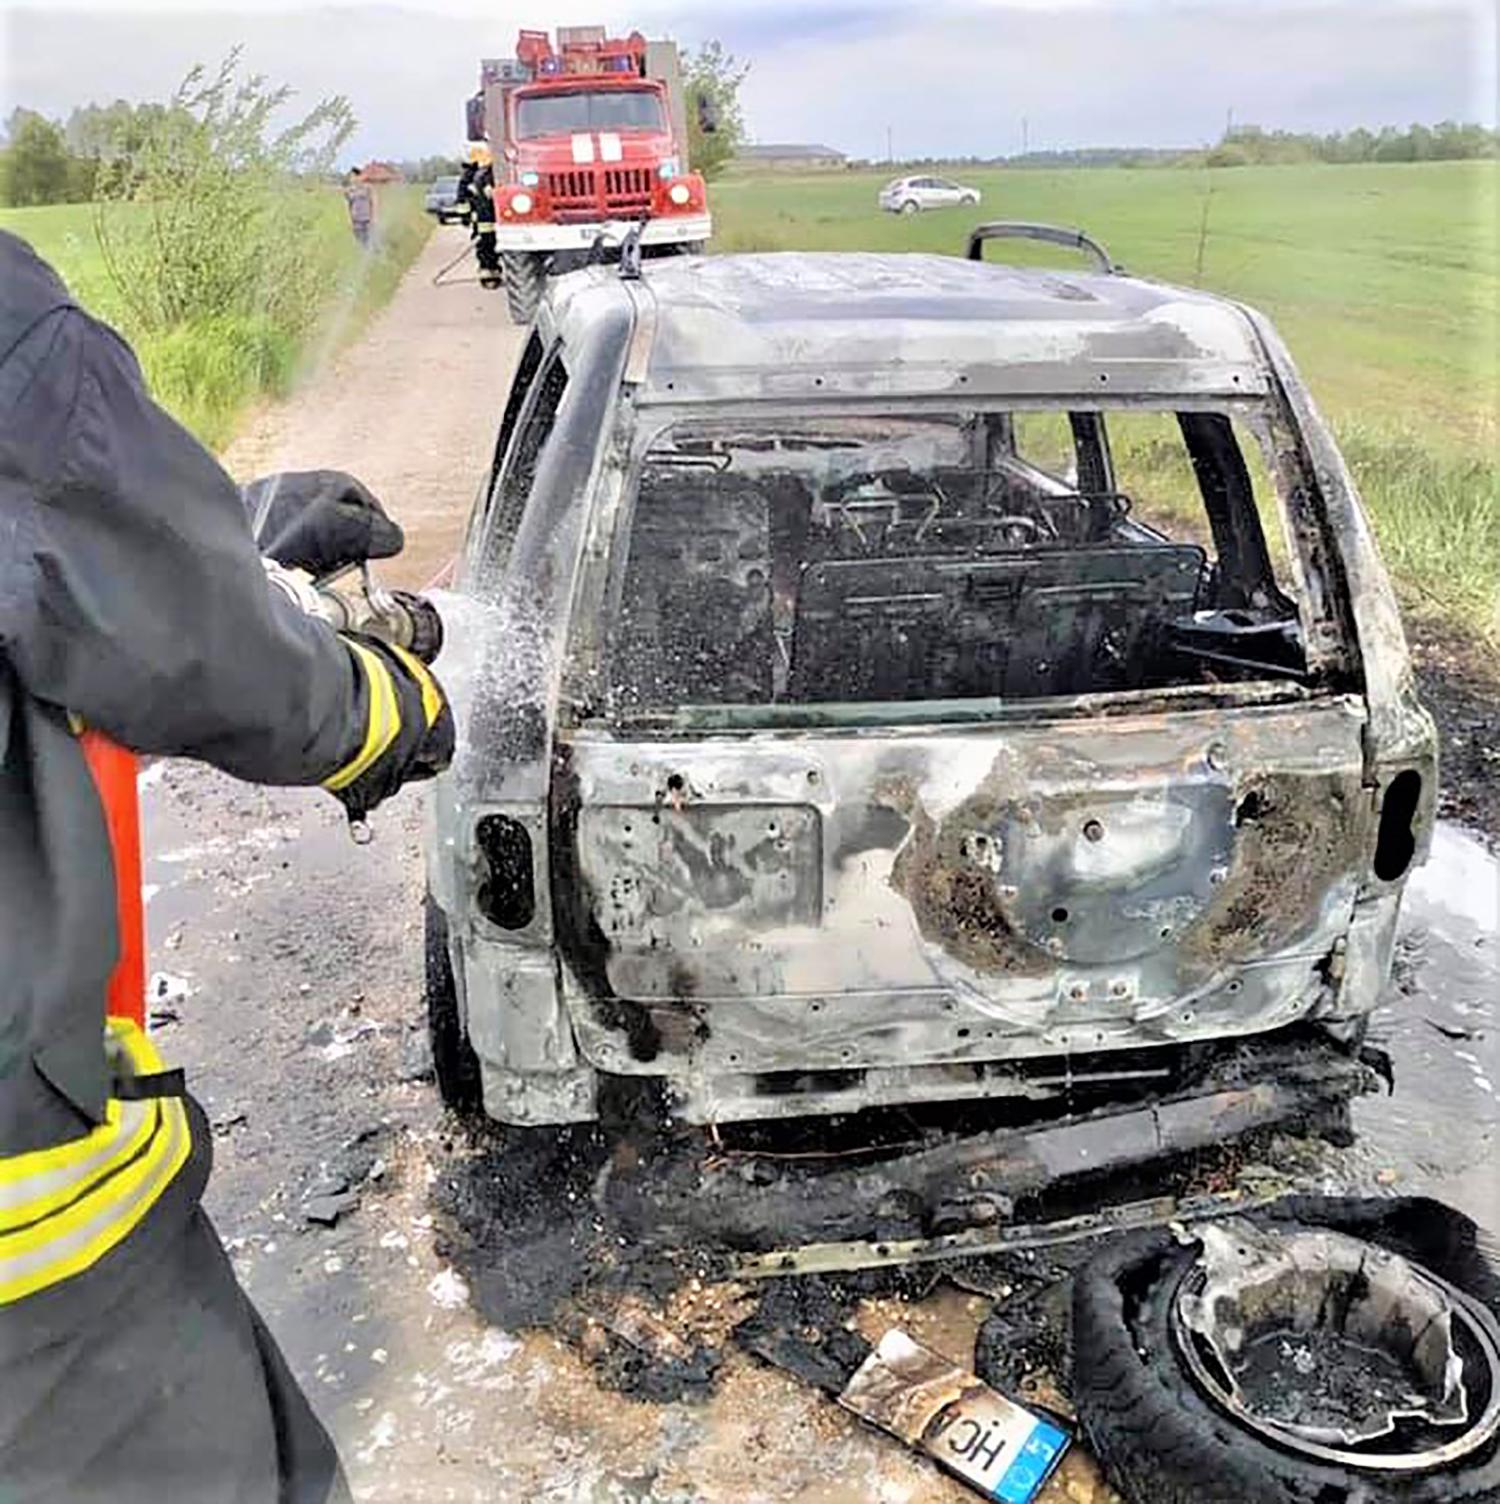 Iš šulinio iškeltas radinys su neaiškios kilmės medžiaga / Automobilis „Land Rover Freelander“ sudegė nepataisomai.  Ukmergės PGT nuotr.